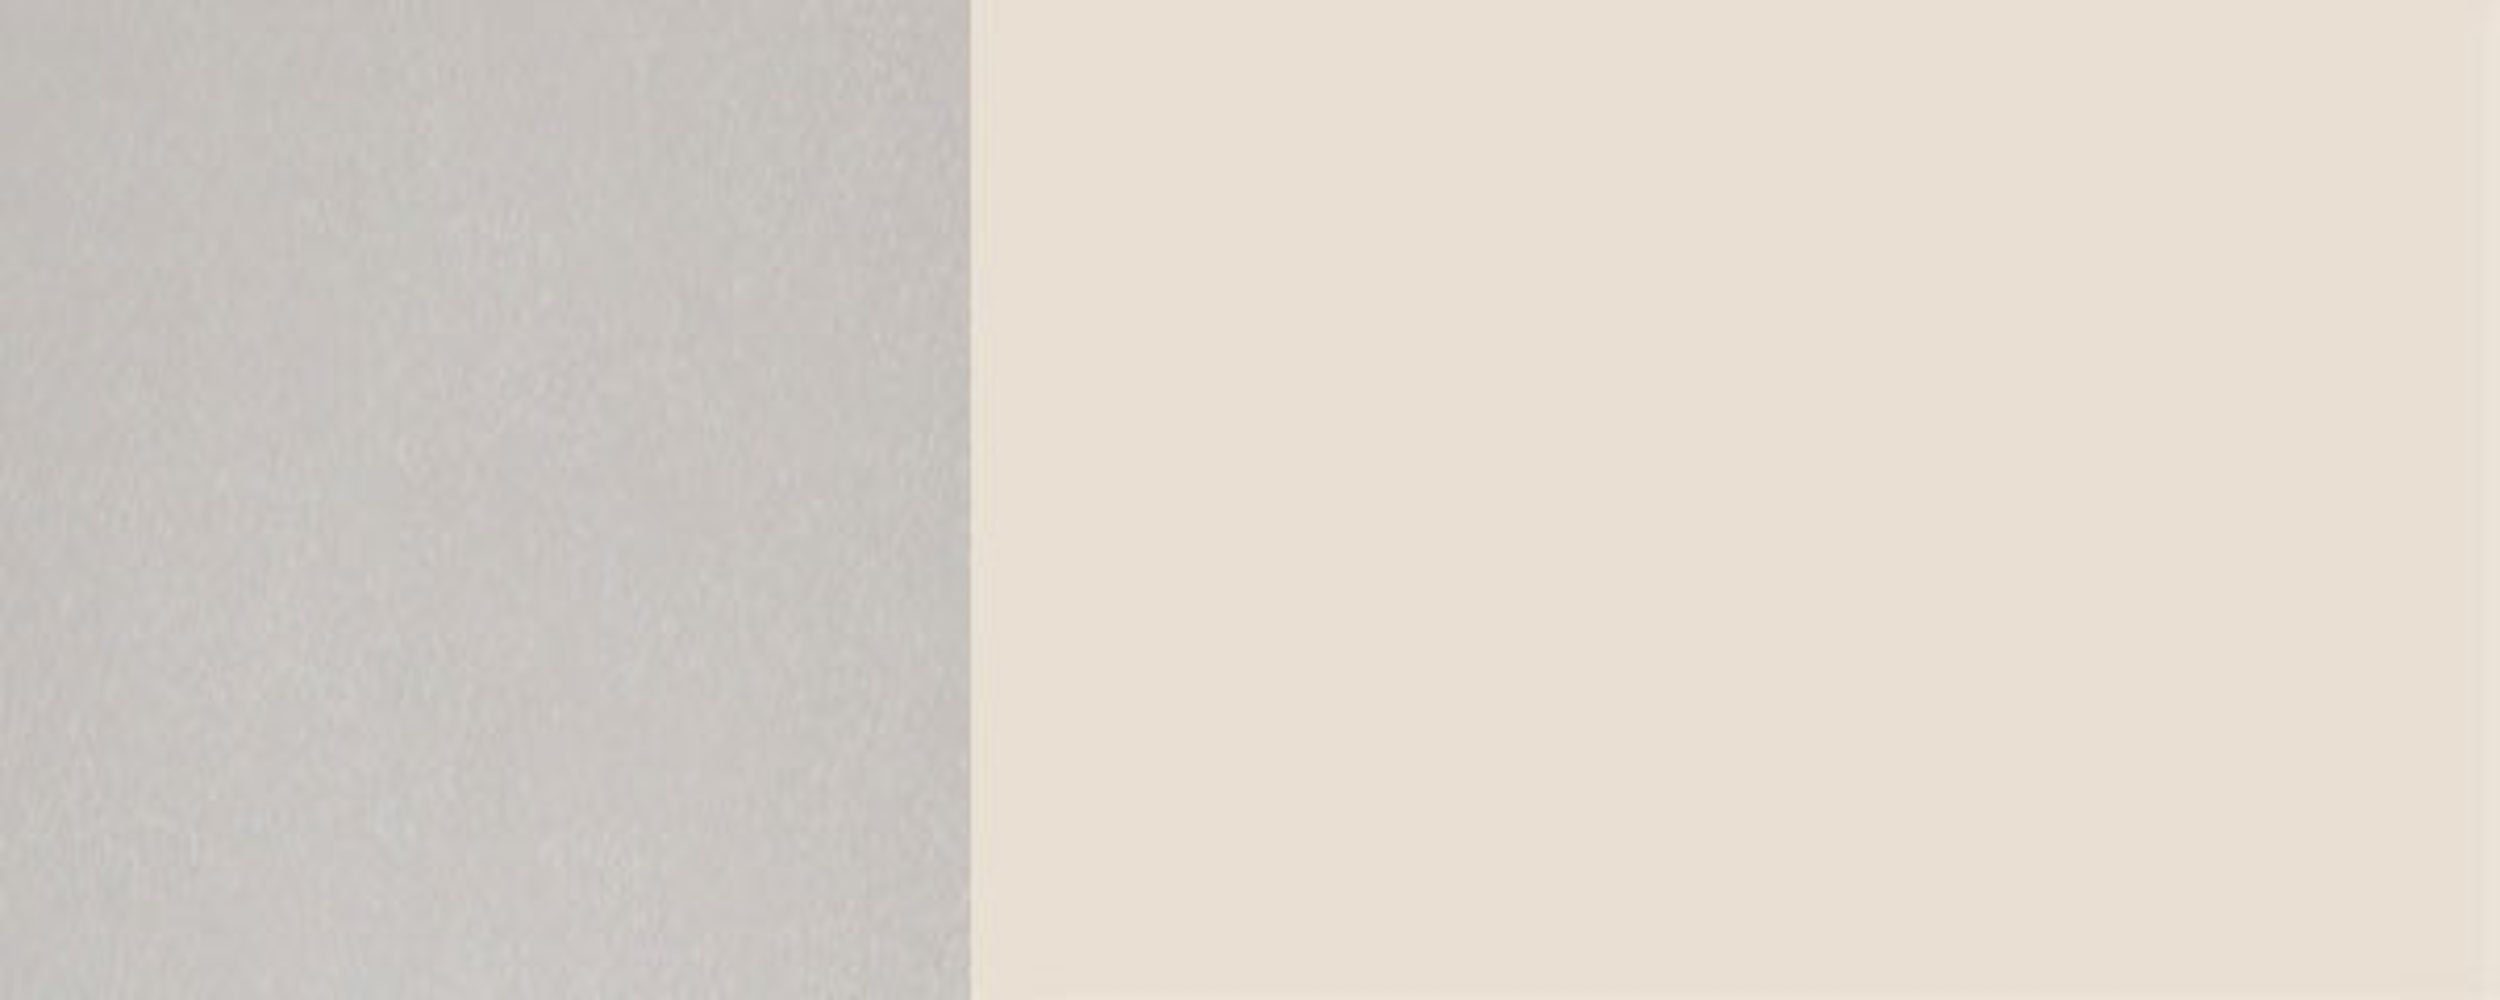 Feldmann-Wohnen Klapphängeschrank Florence RAL grifflos cremeweiß (Florence) Front- 90cm wählbar und mit Hochglanz Glaseinsatz 9001 1-türig Korpusfarbe